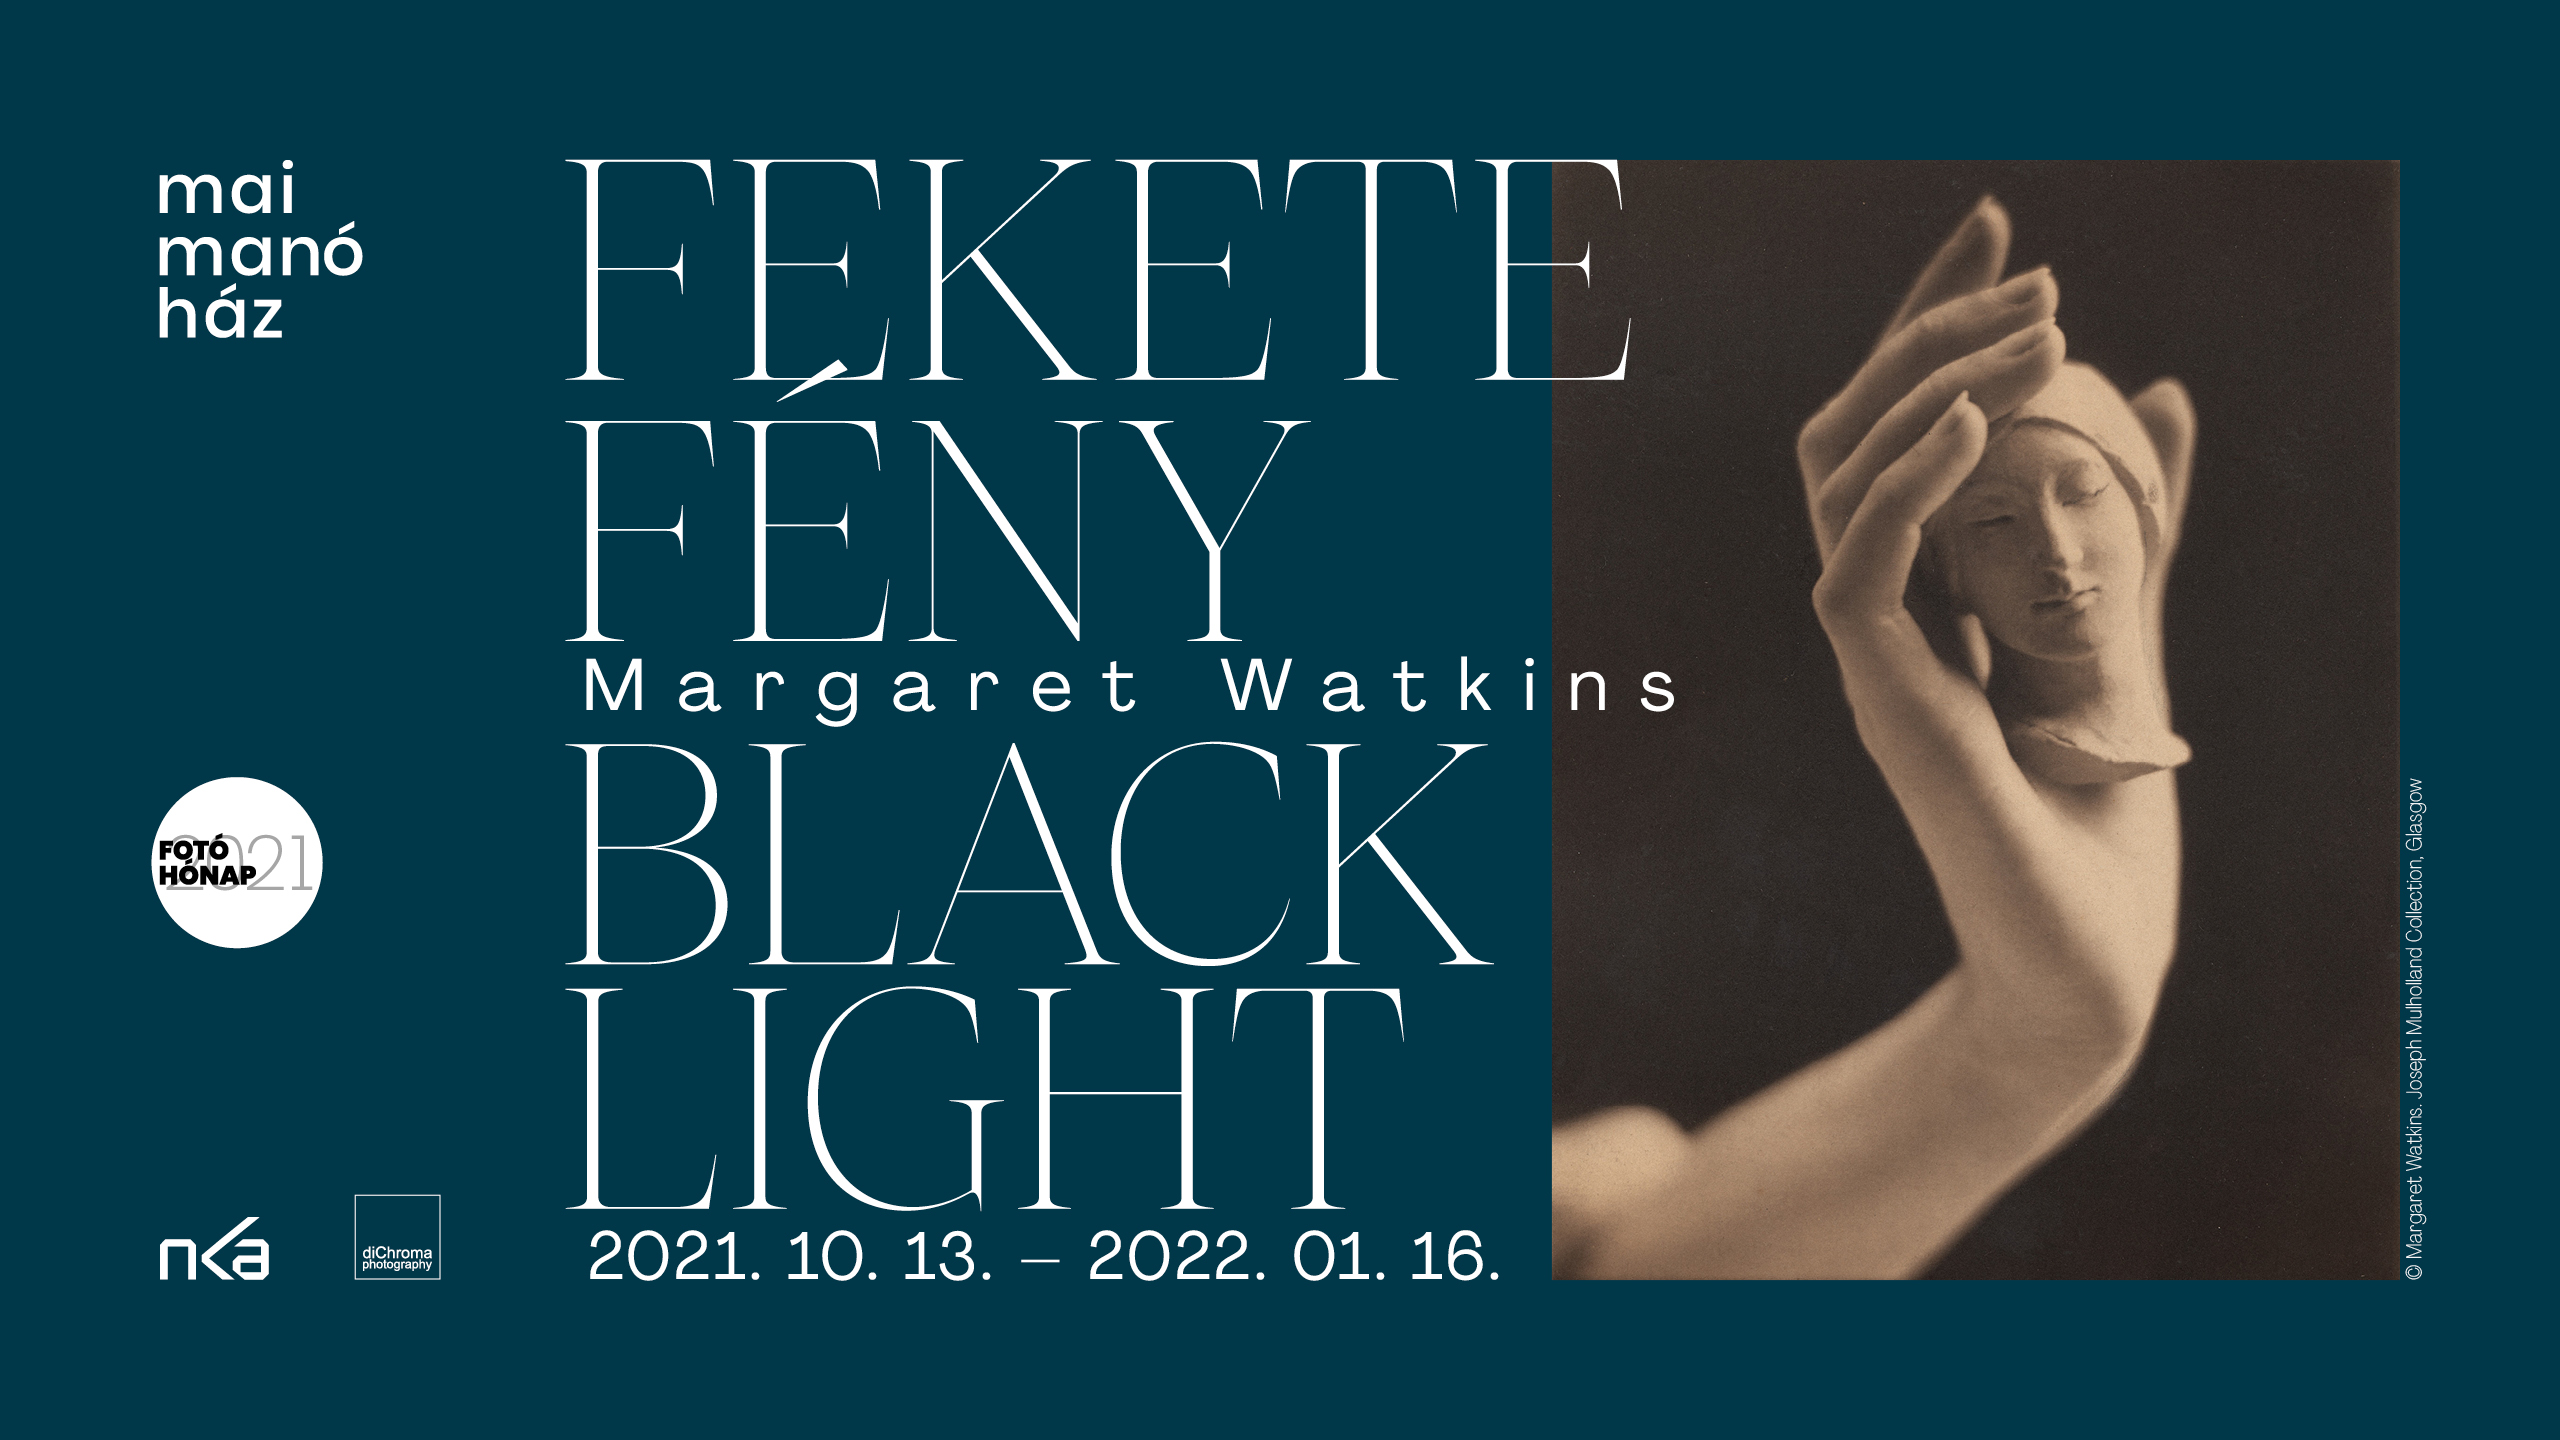 margaret watkins fekete fény kiálltás mai manó ház fotográfia galéria hírek